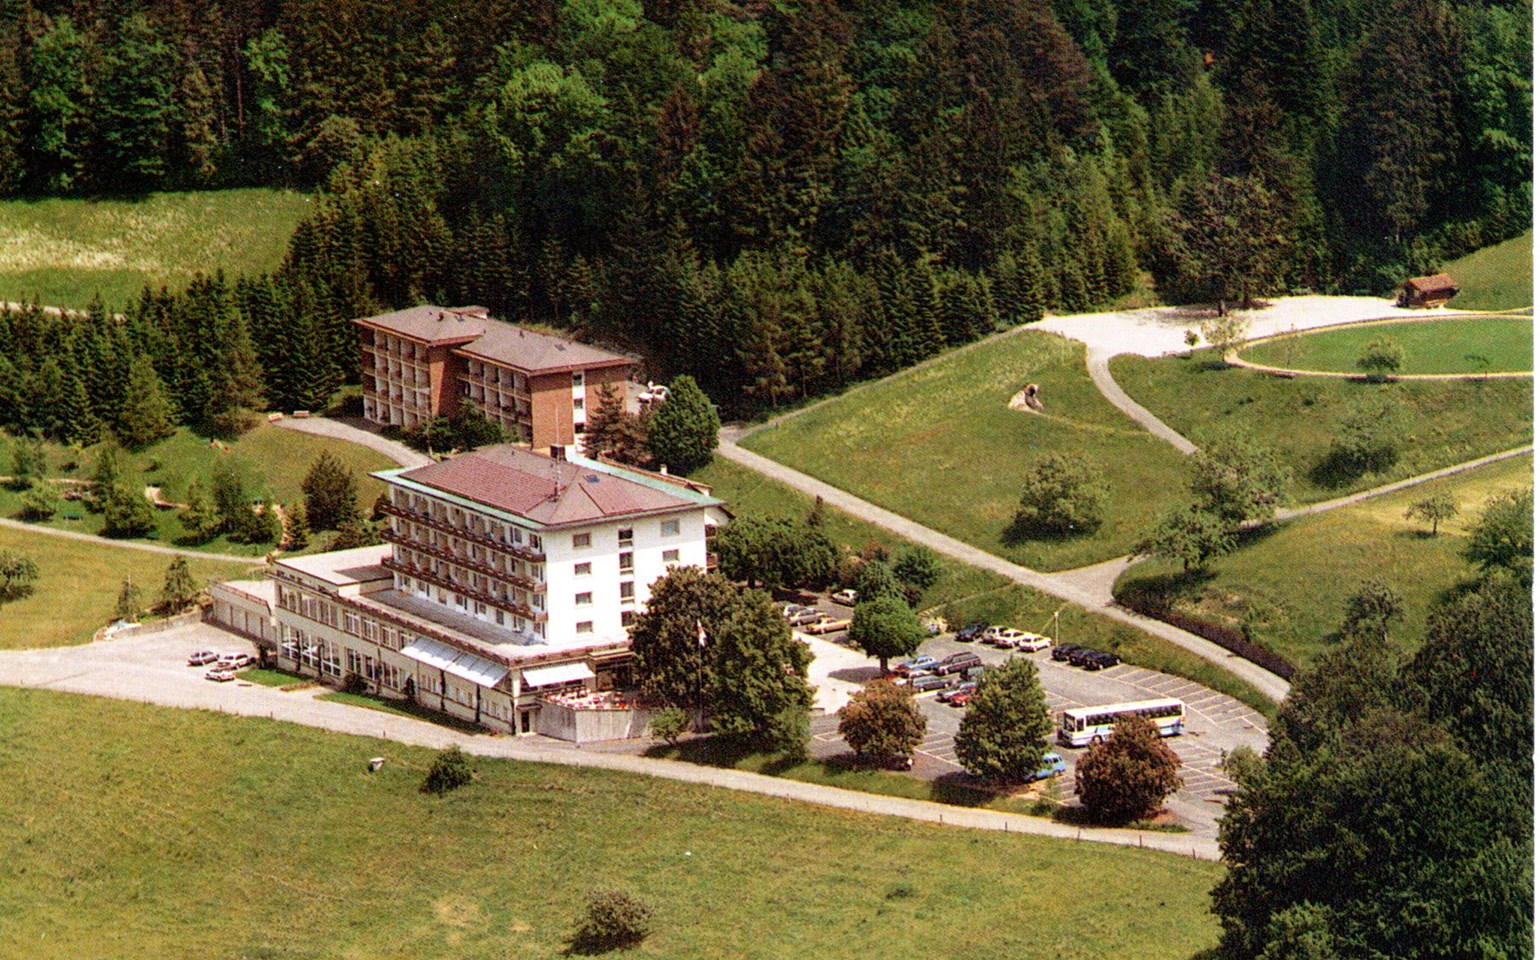 Bad Ramsach Quellhotel_Laeufelfingen_History 